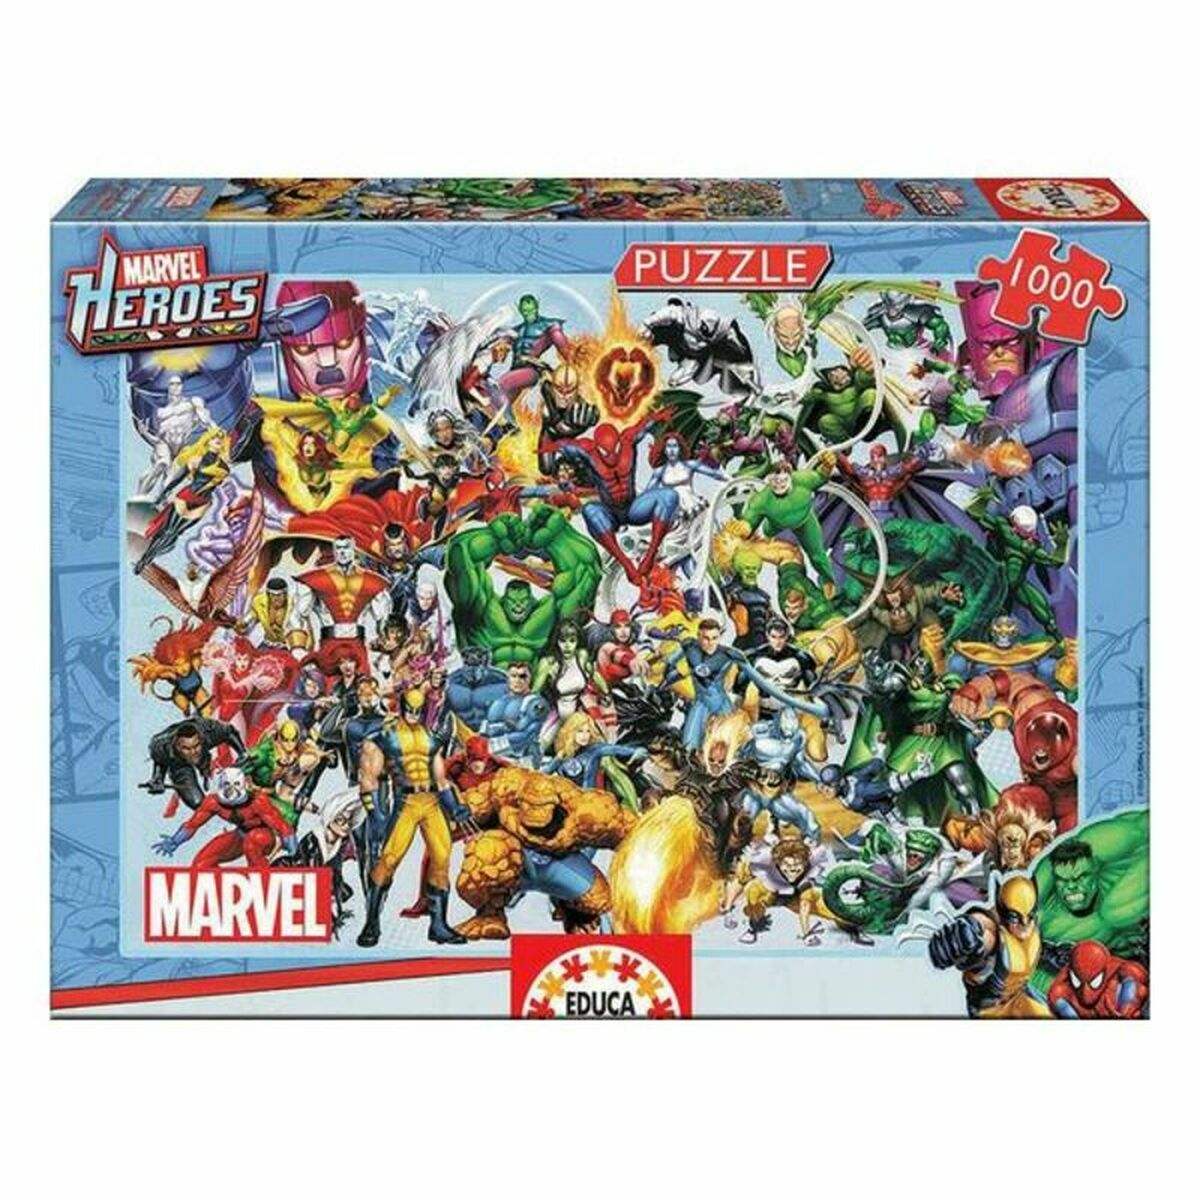 Puzzle Marvel Heroes Educa Heroes Marvel 1000 Stücke